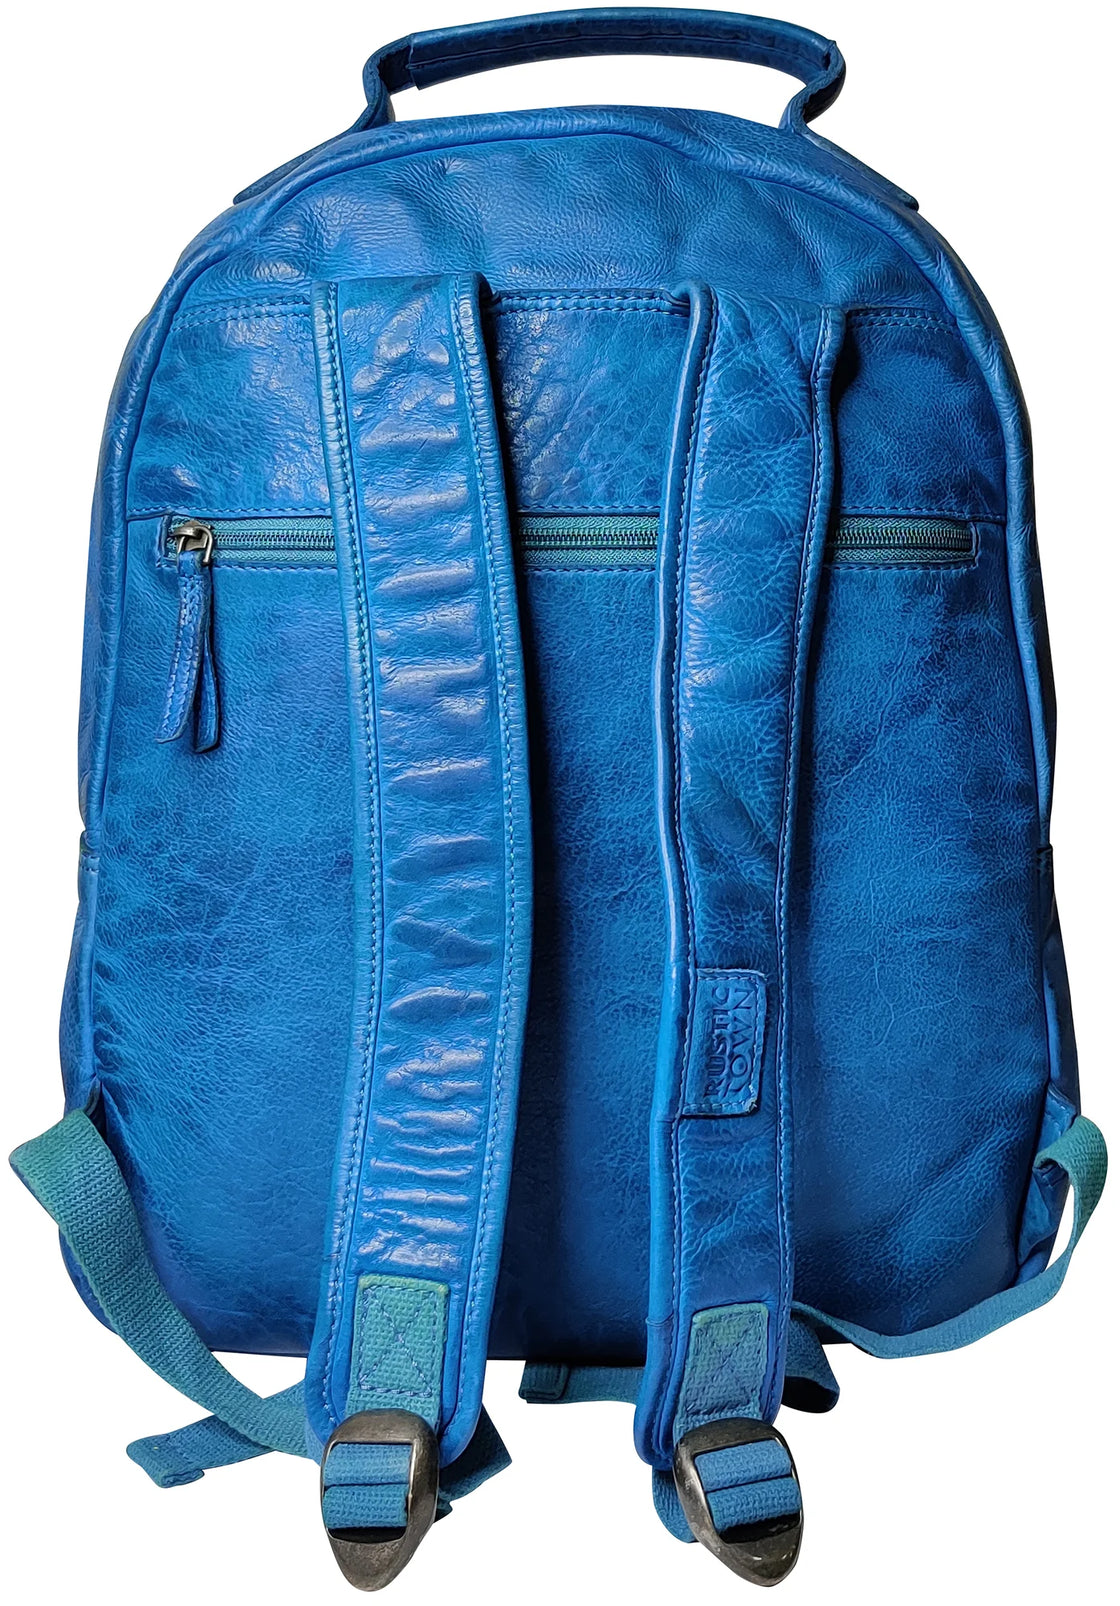 Backpack for women